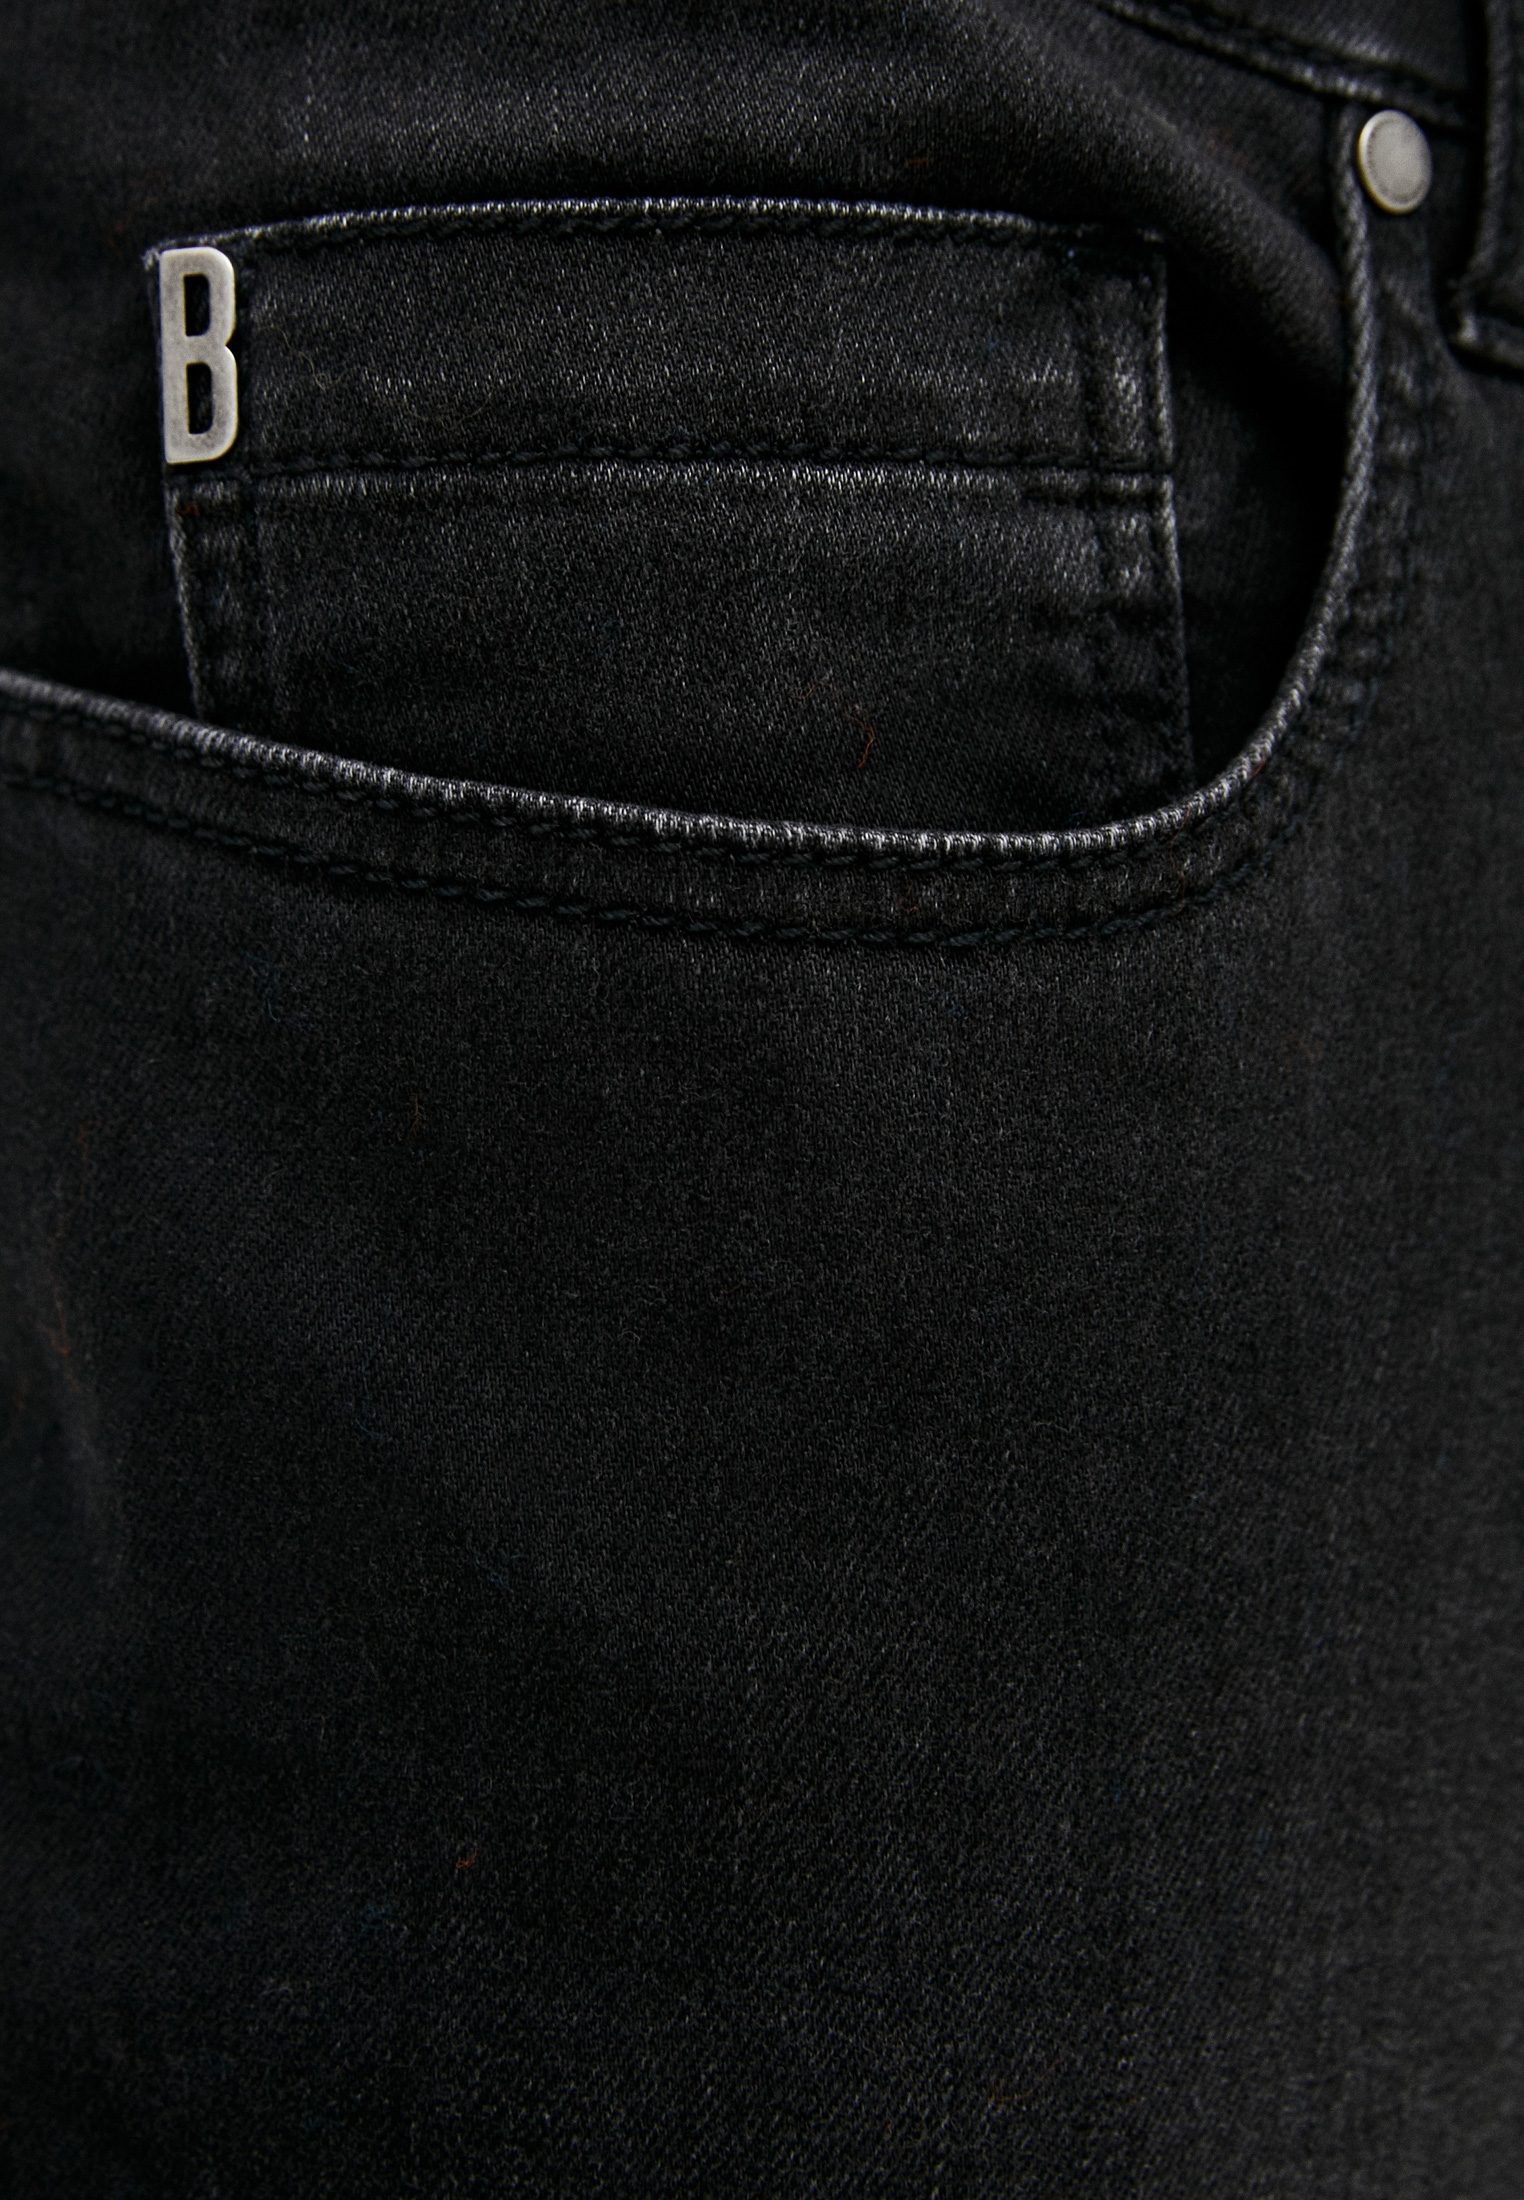 Мужские зауженные джинсы Bikkembergs (Биккембергс) C Q 015 86 S 2927: изображение 5